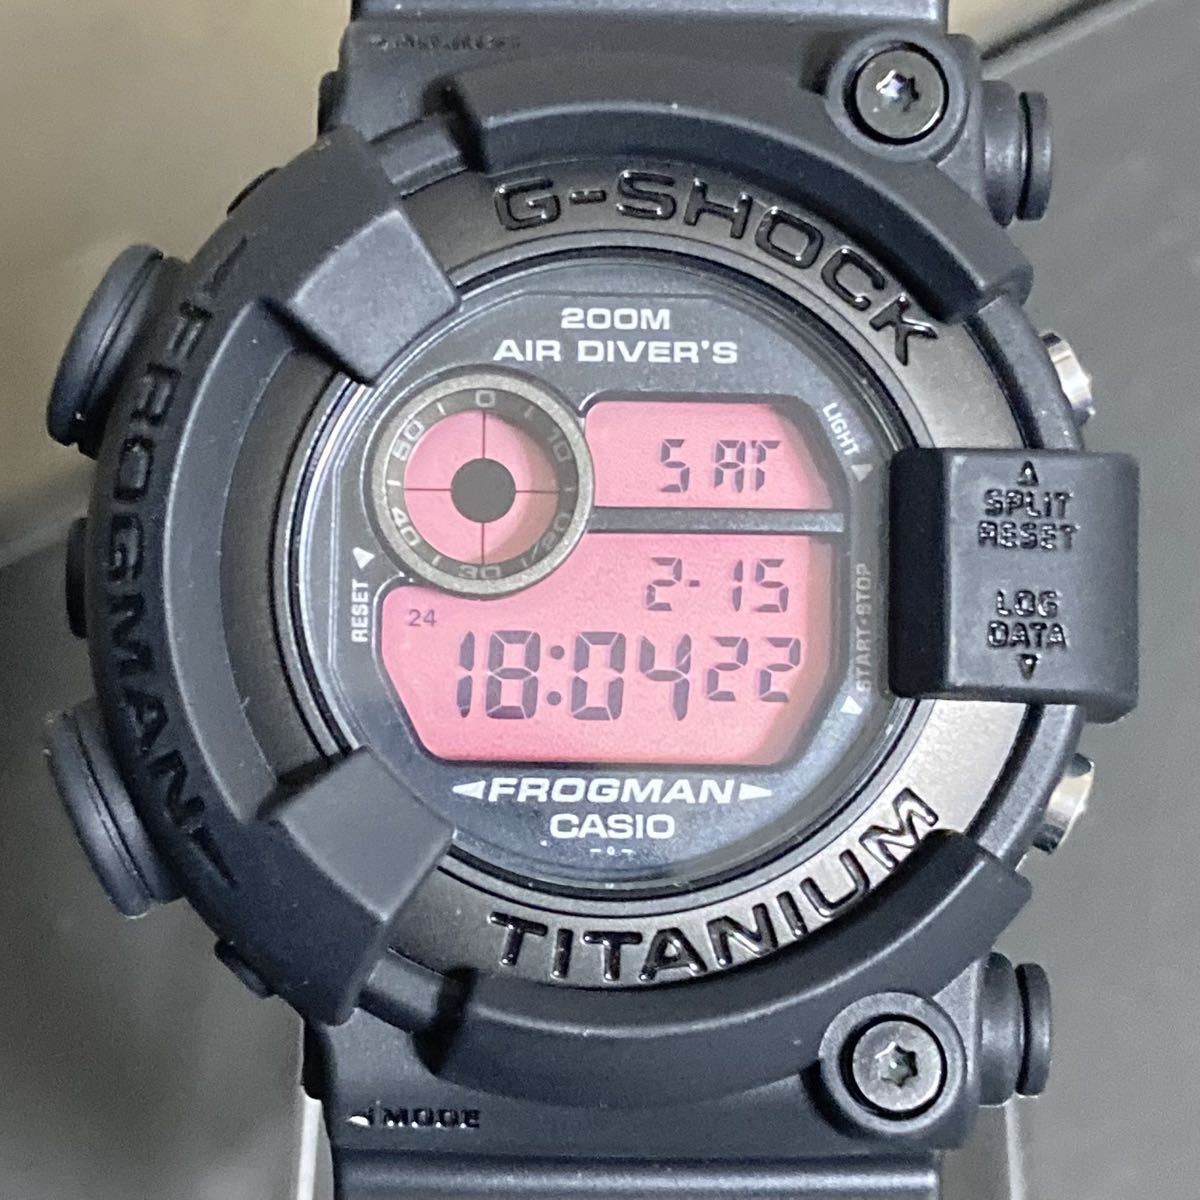 高価値 リアルブラックフロッグマン DW-8200 G-SHOCK CASIO - 腕時計(デジタル) - www.smithsfalls.ca